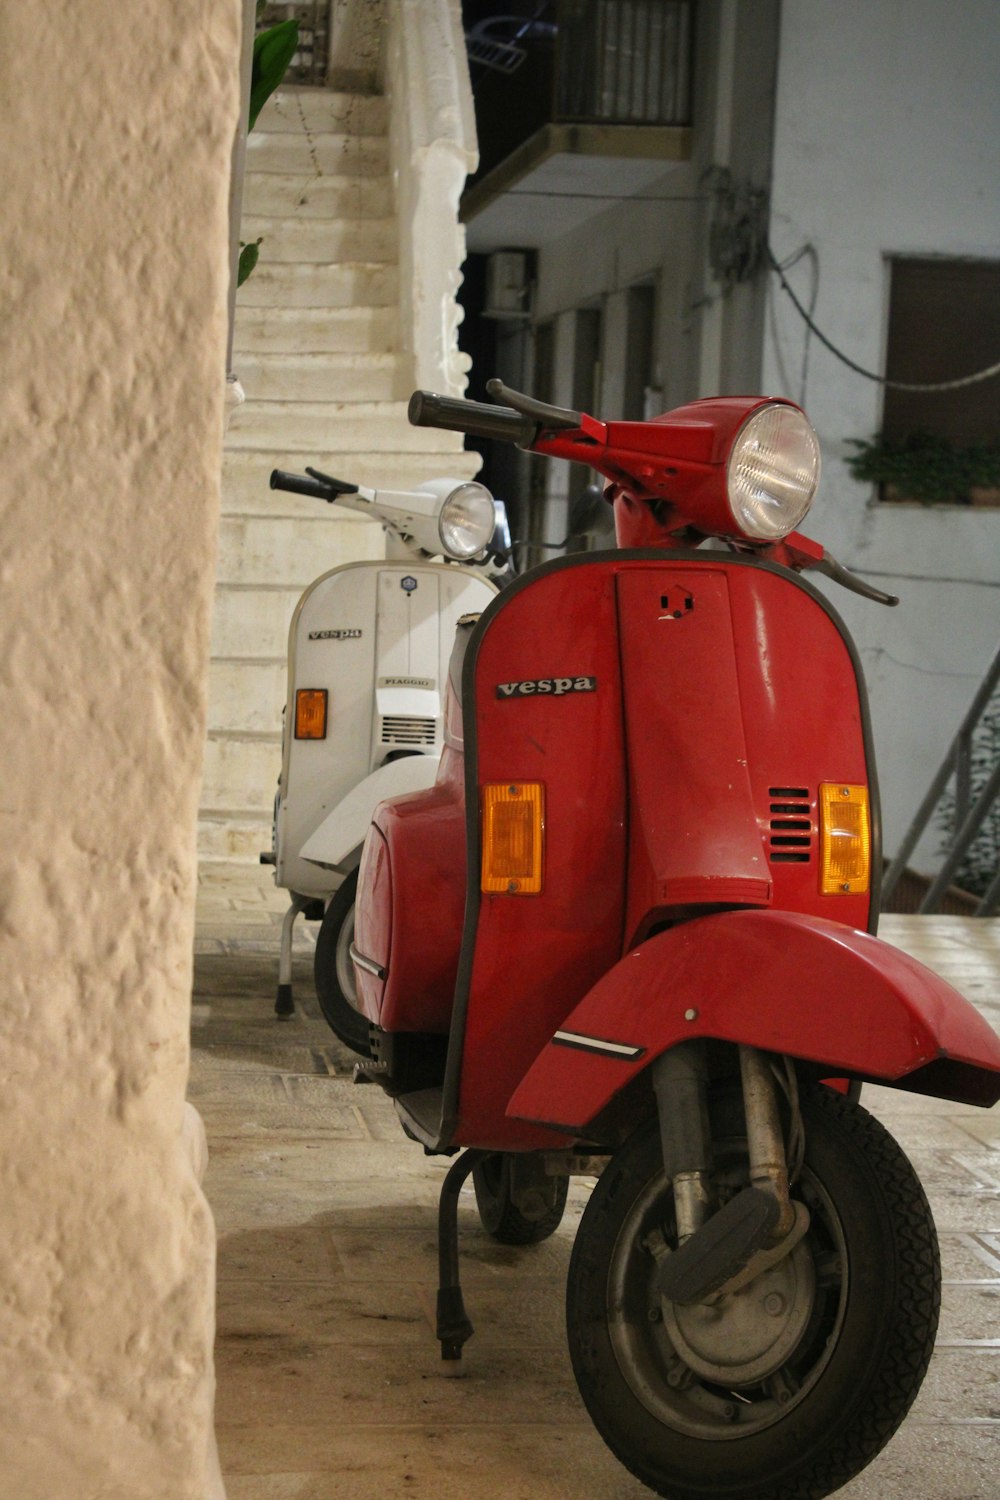 Uno scooter rosso parcheggiato accanto a uno scooter bianco